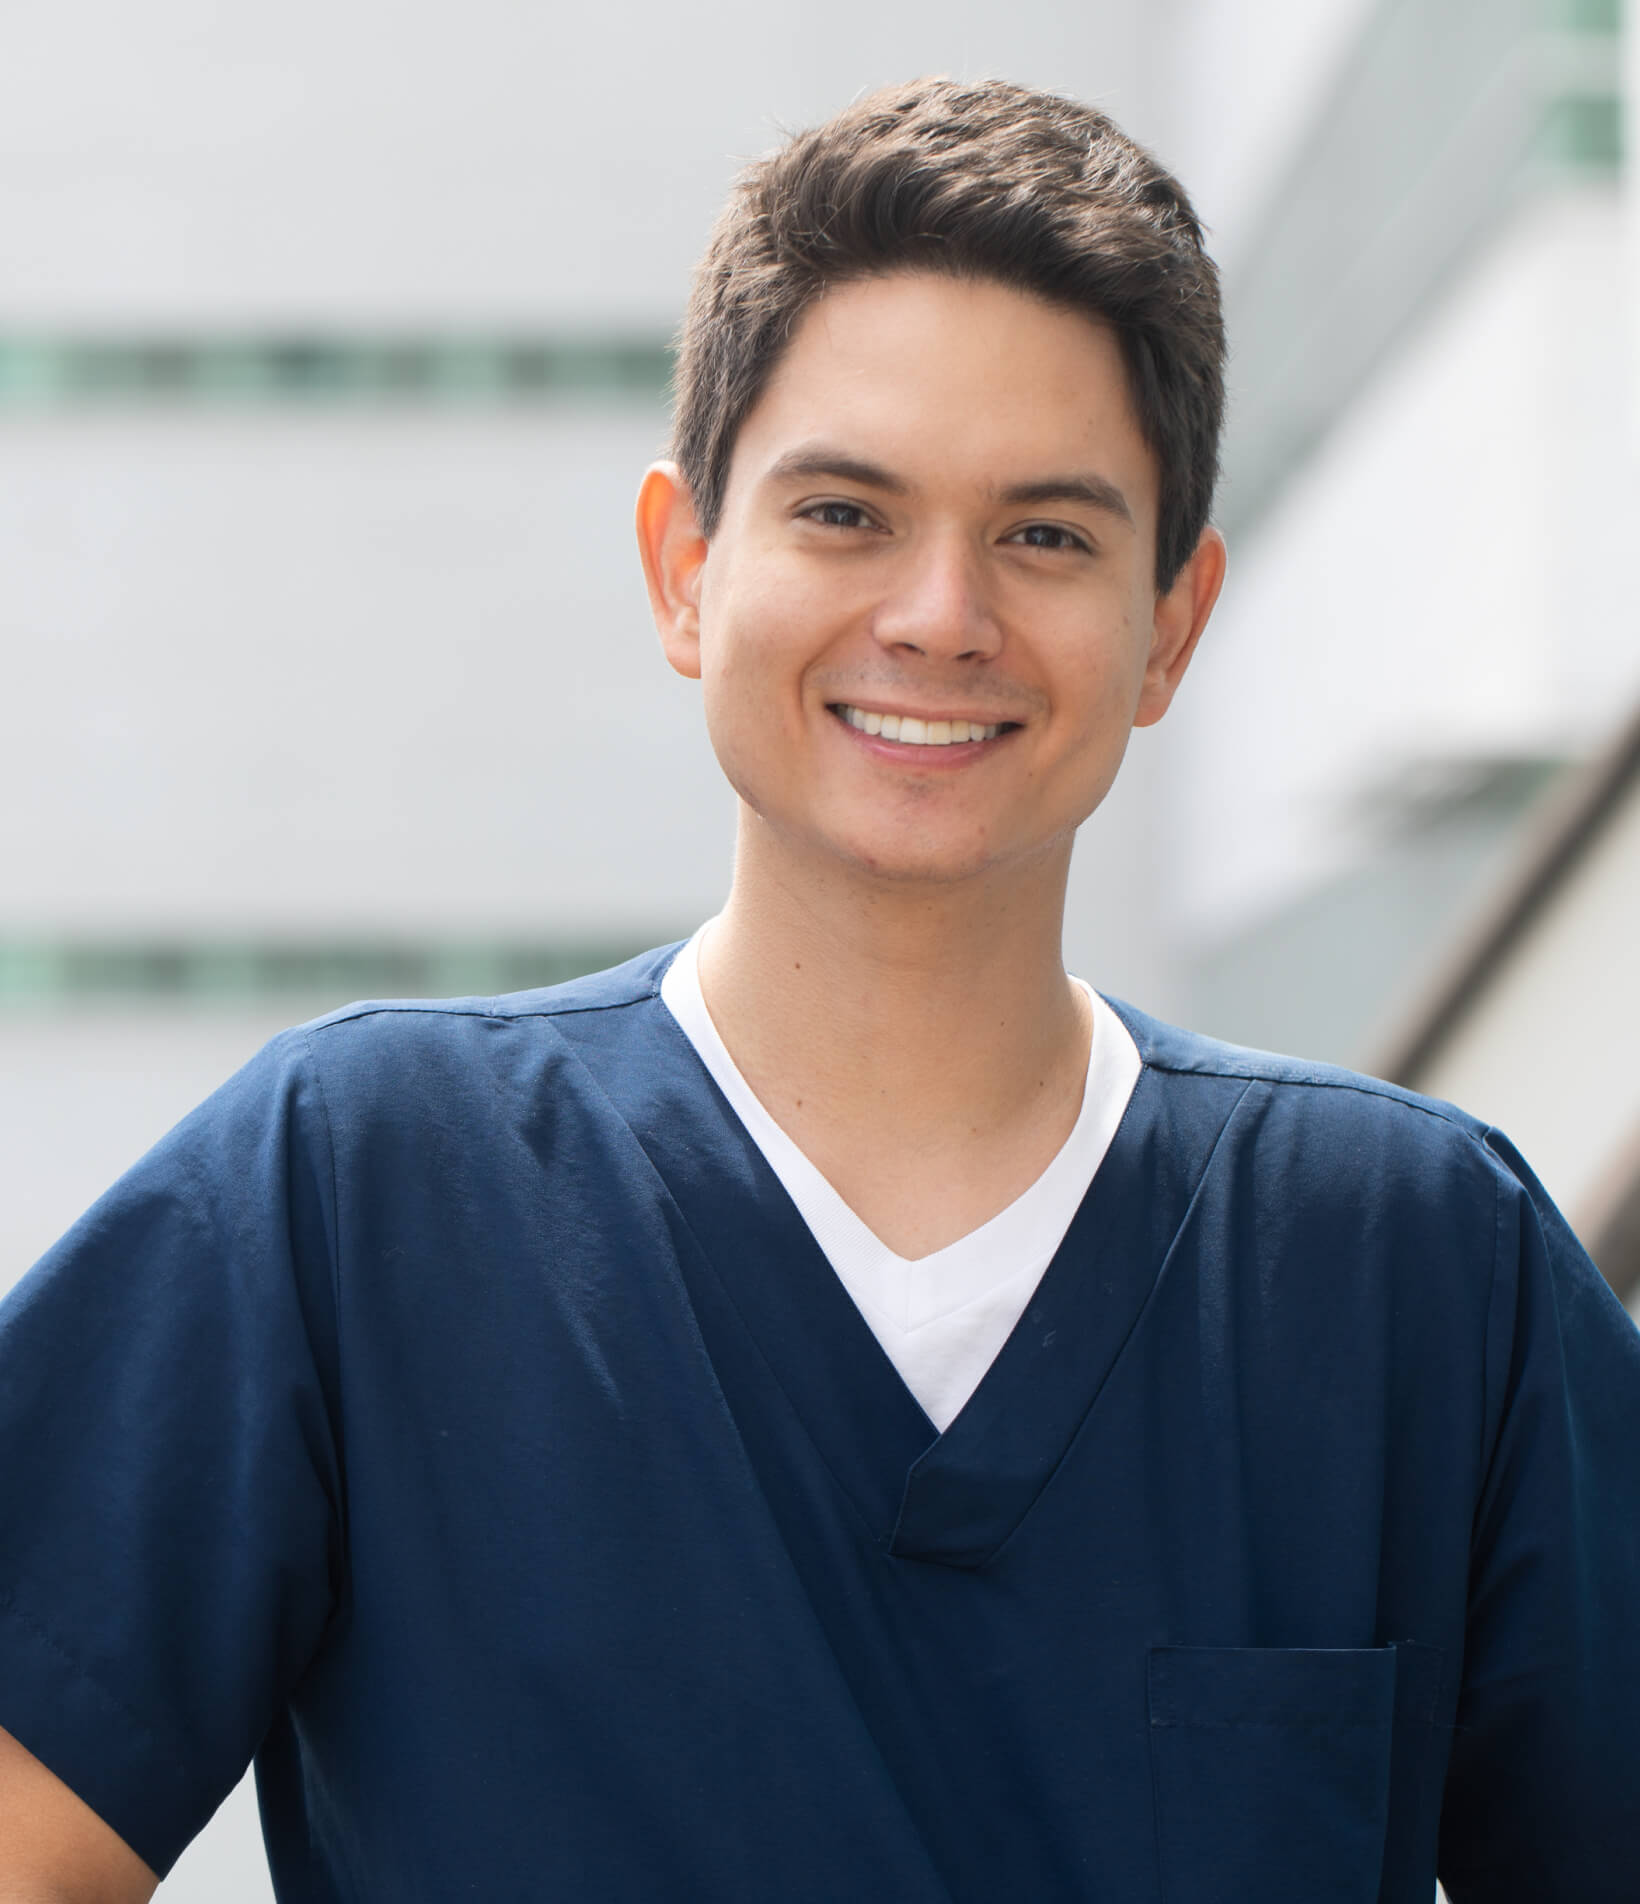 Dr. Alejandro Rivera - Especialista en cirugía maxilofacial, implantología y regeneración ósea